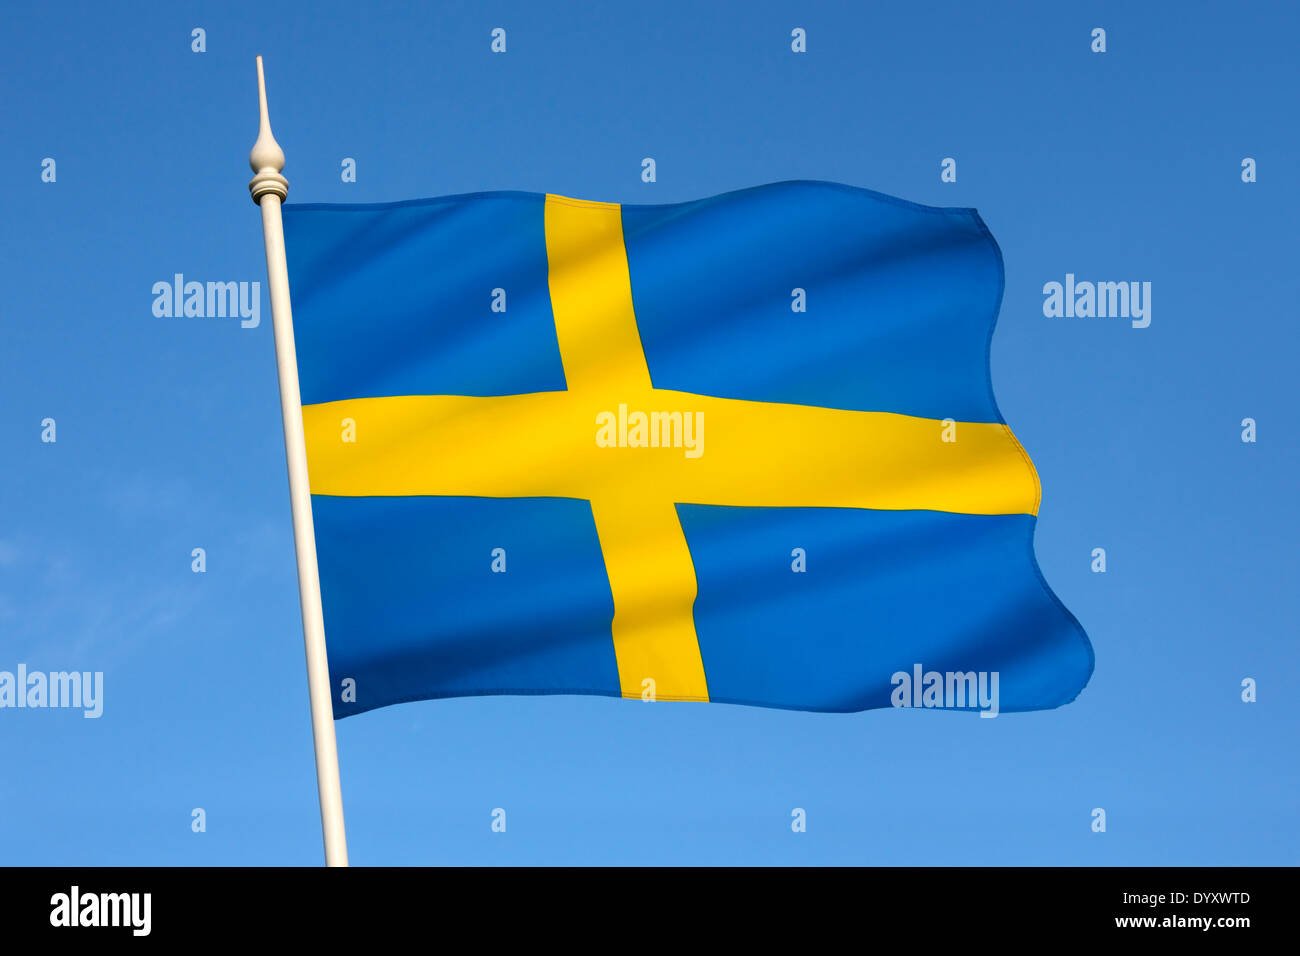 Le drapeau national du pays scandinave de la Suède. Banque D'Images